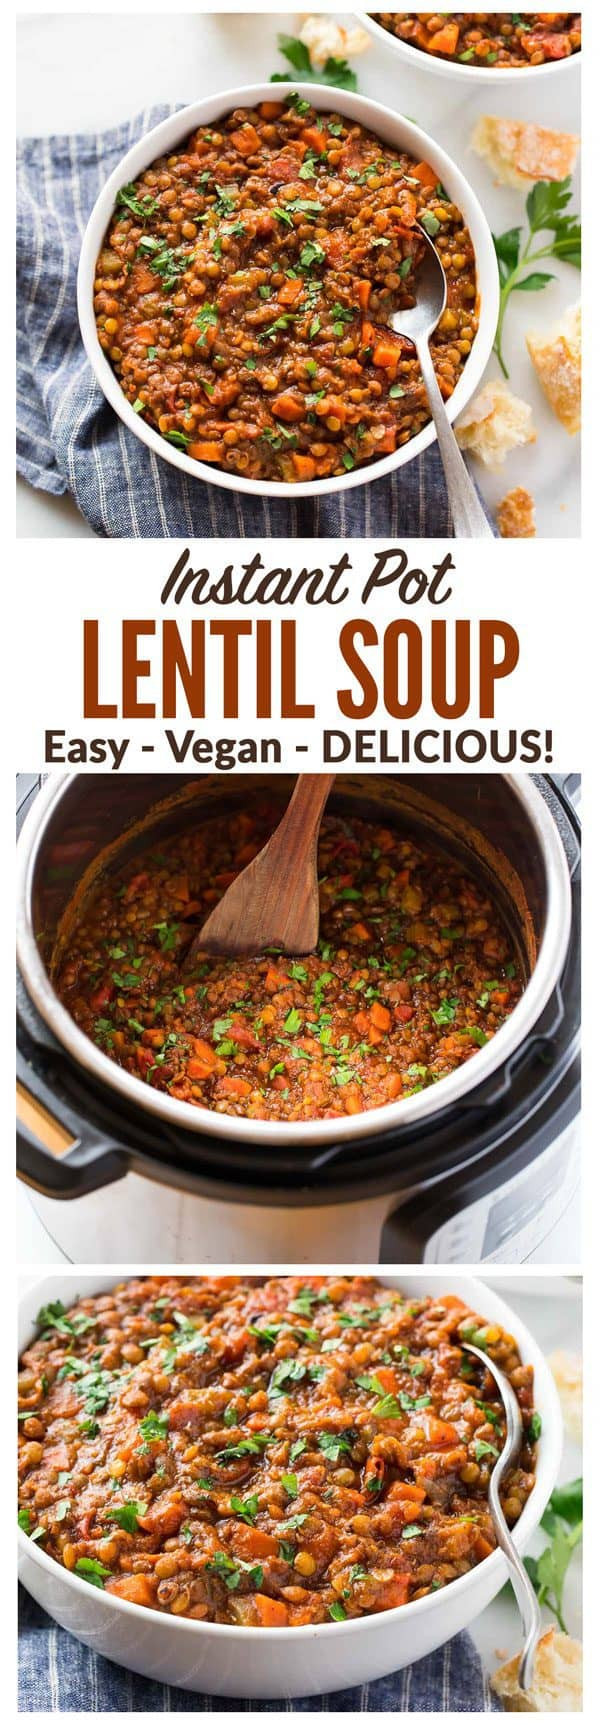 Healthy Instant Pot Recipes Vegetarian
 Instant Pot Lentil Soup